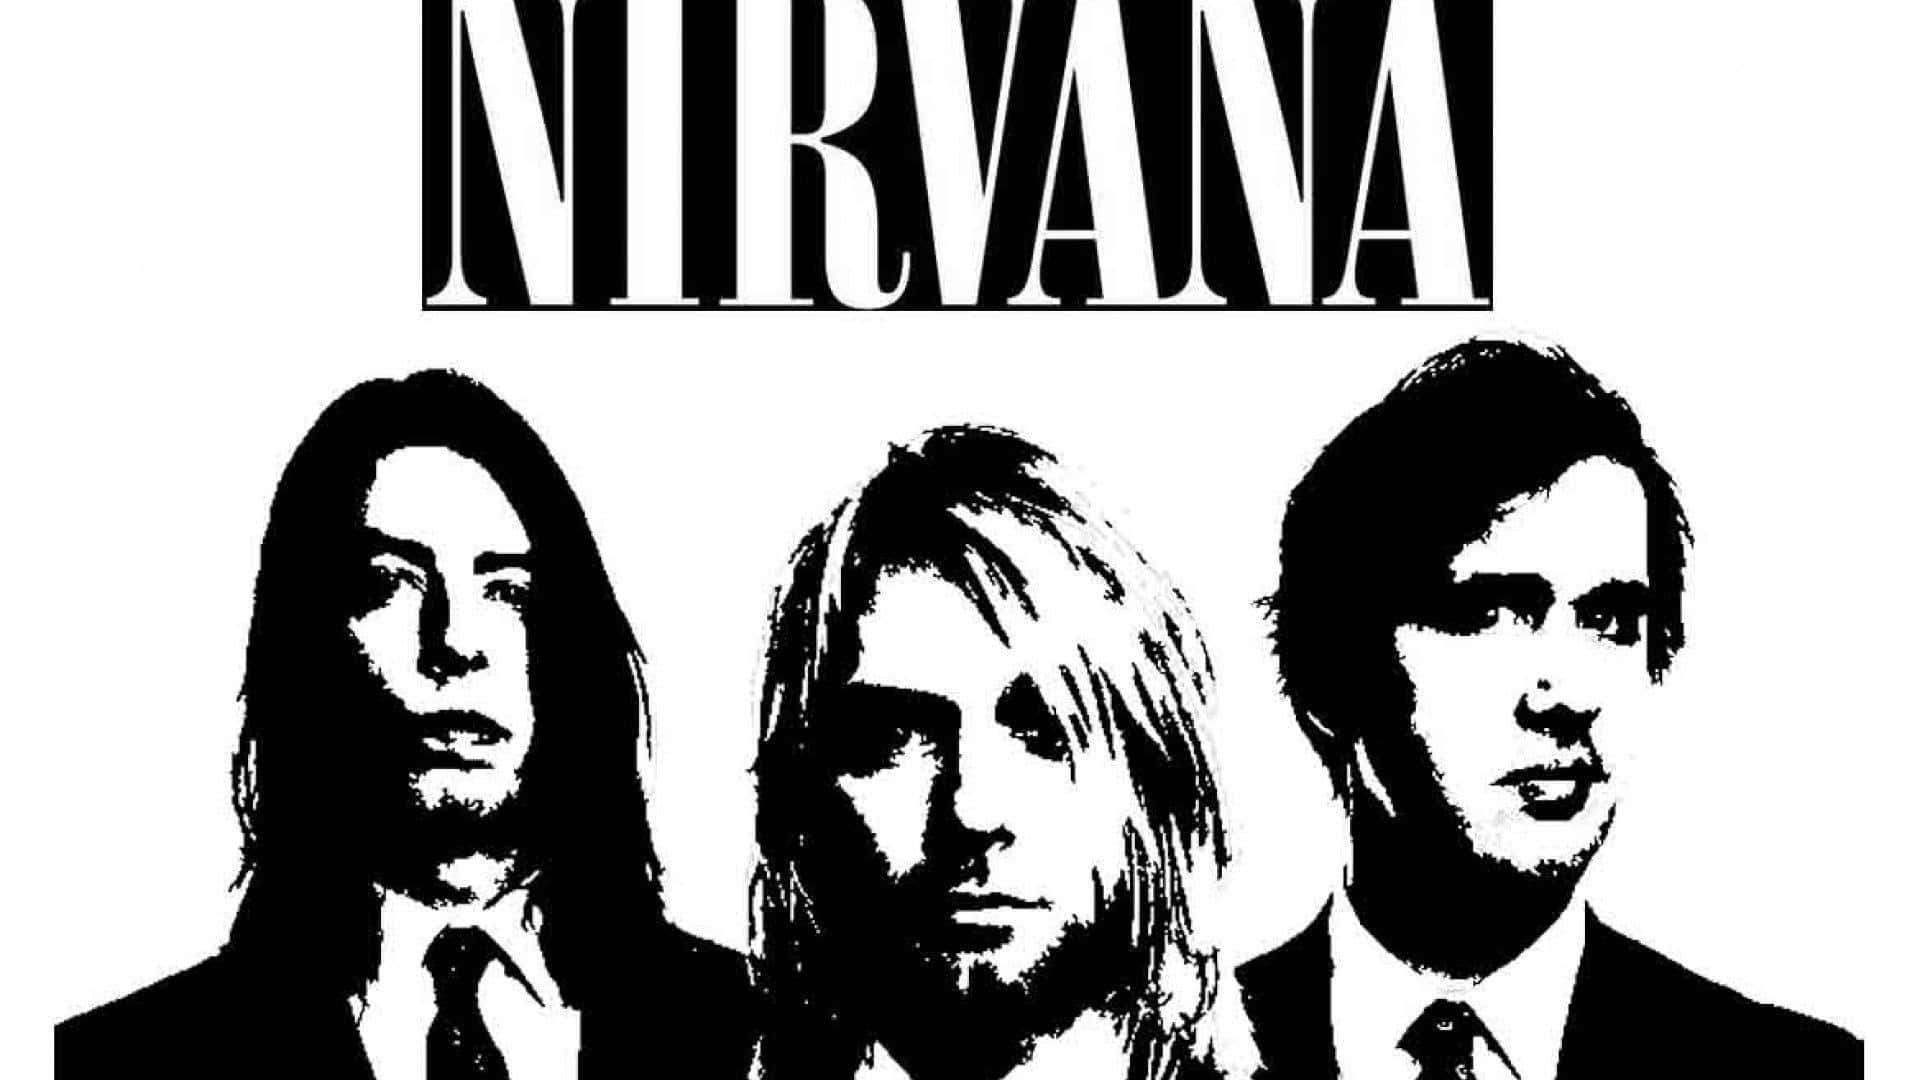 Iconoicónico De La Cara Sonriente Del Grupo Nirvana